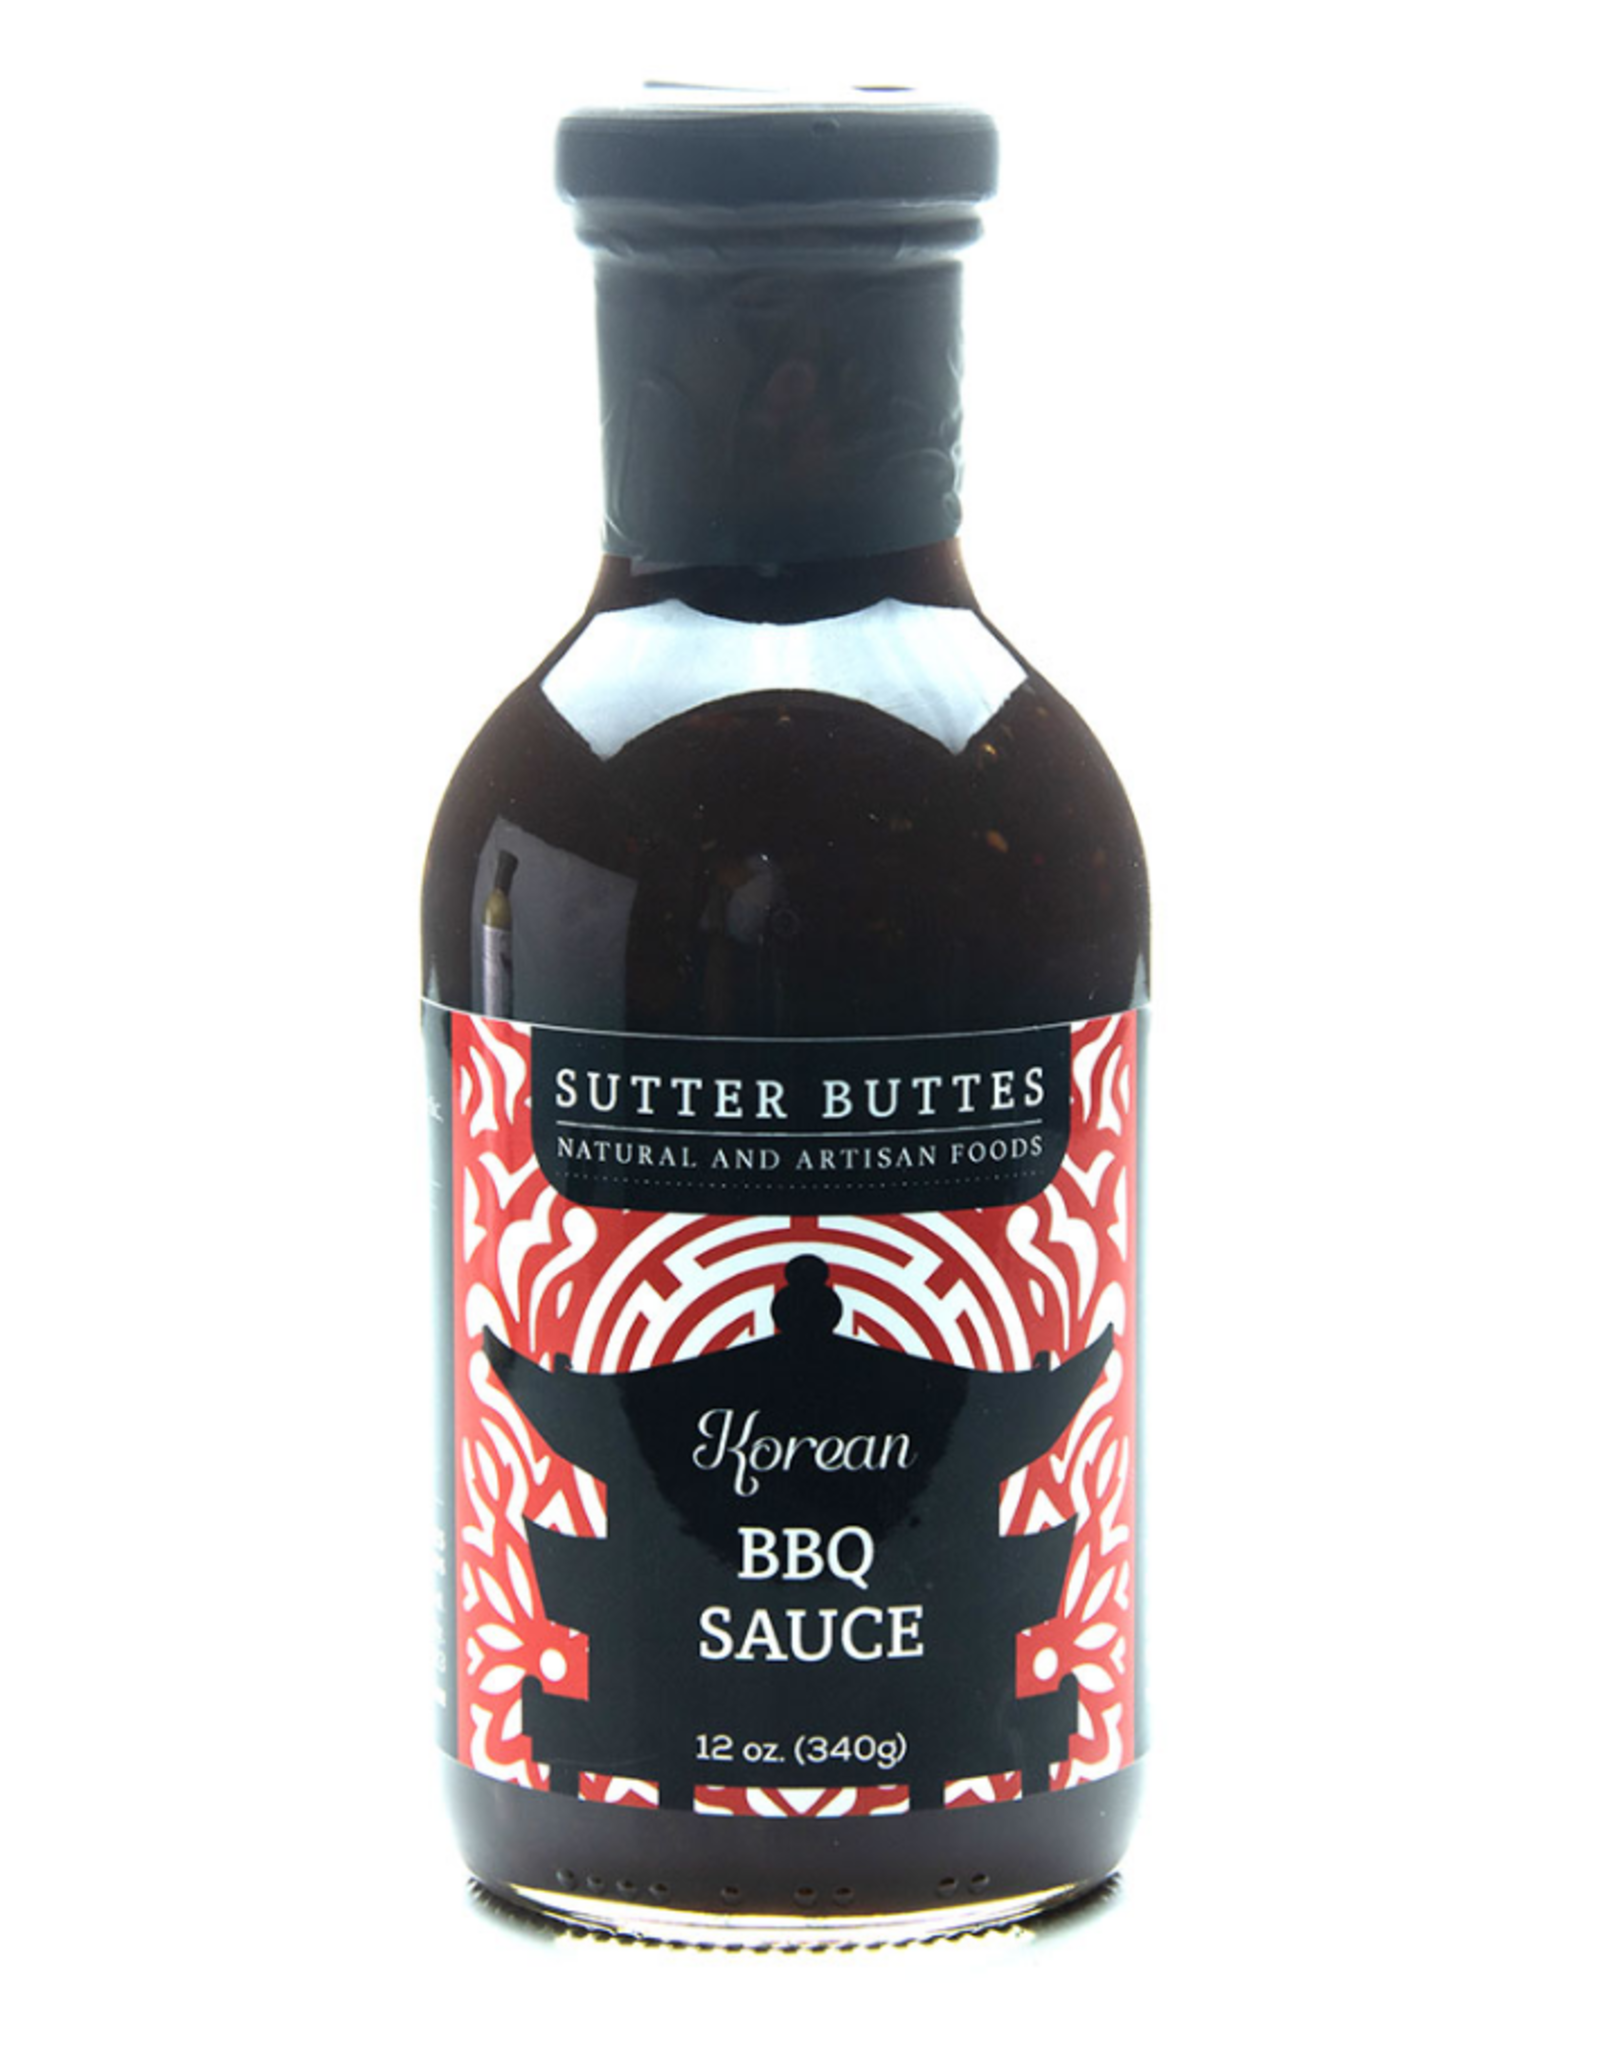 Sutter Buttes Korean BBQ Sauce